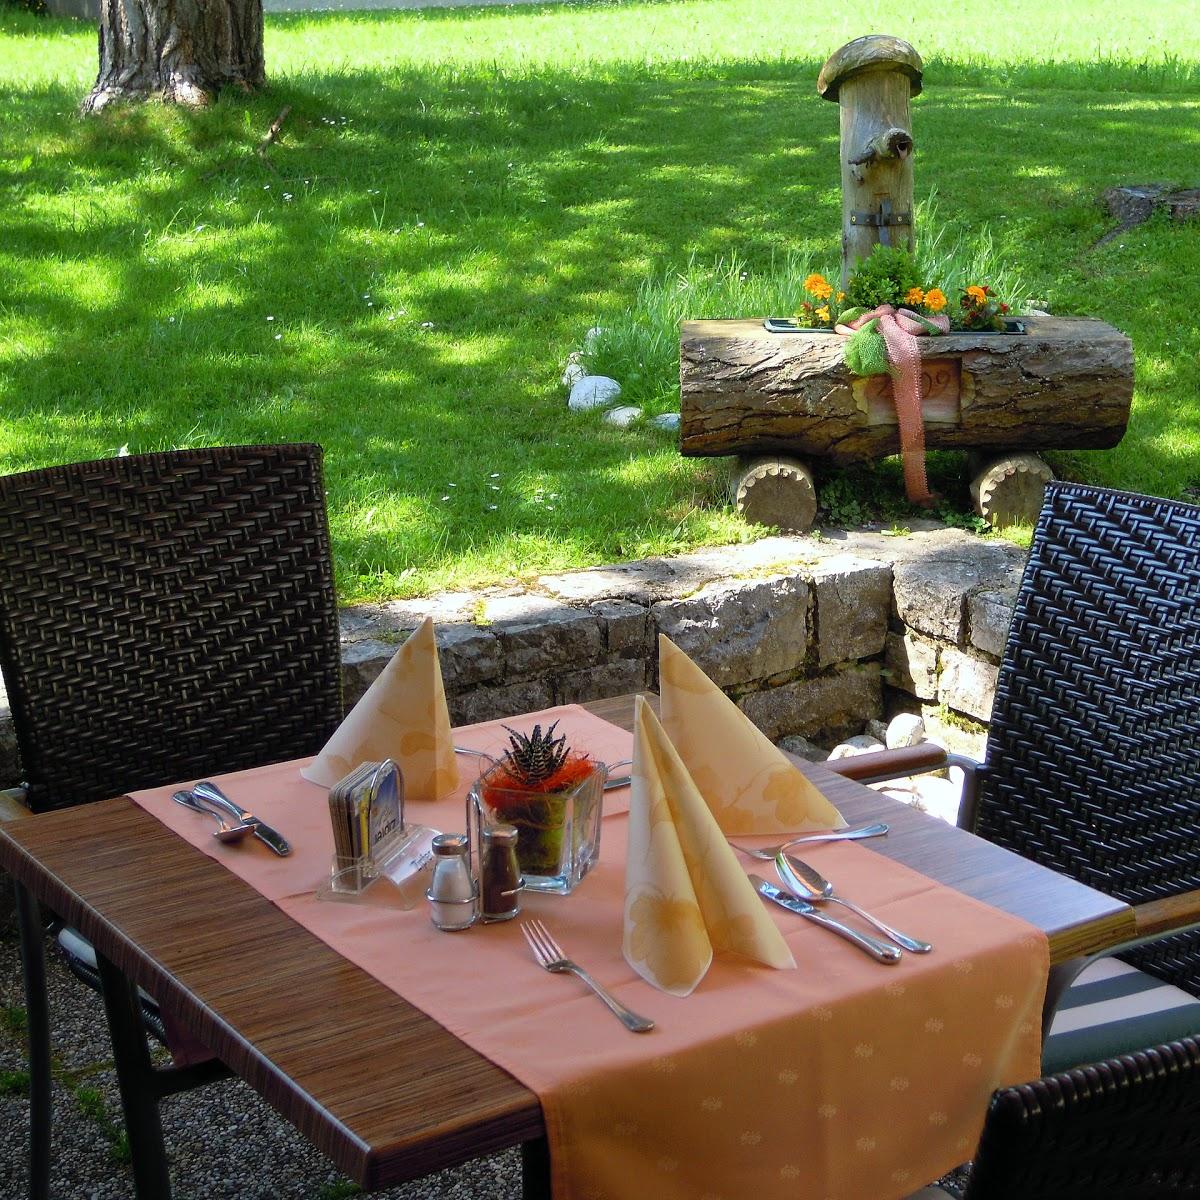 Restaurant "Landgasthof Reitsamerhof" in Werfen